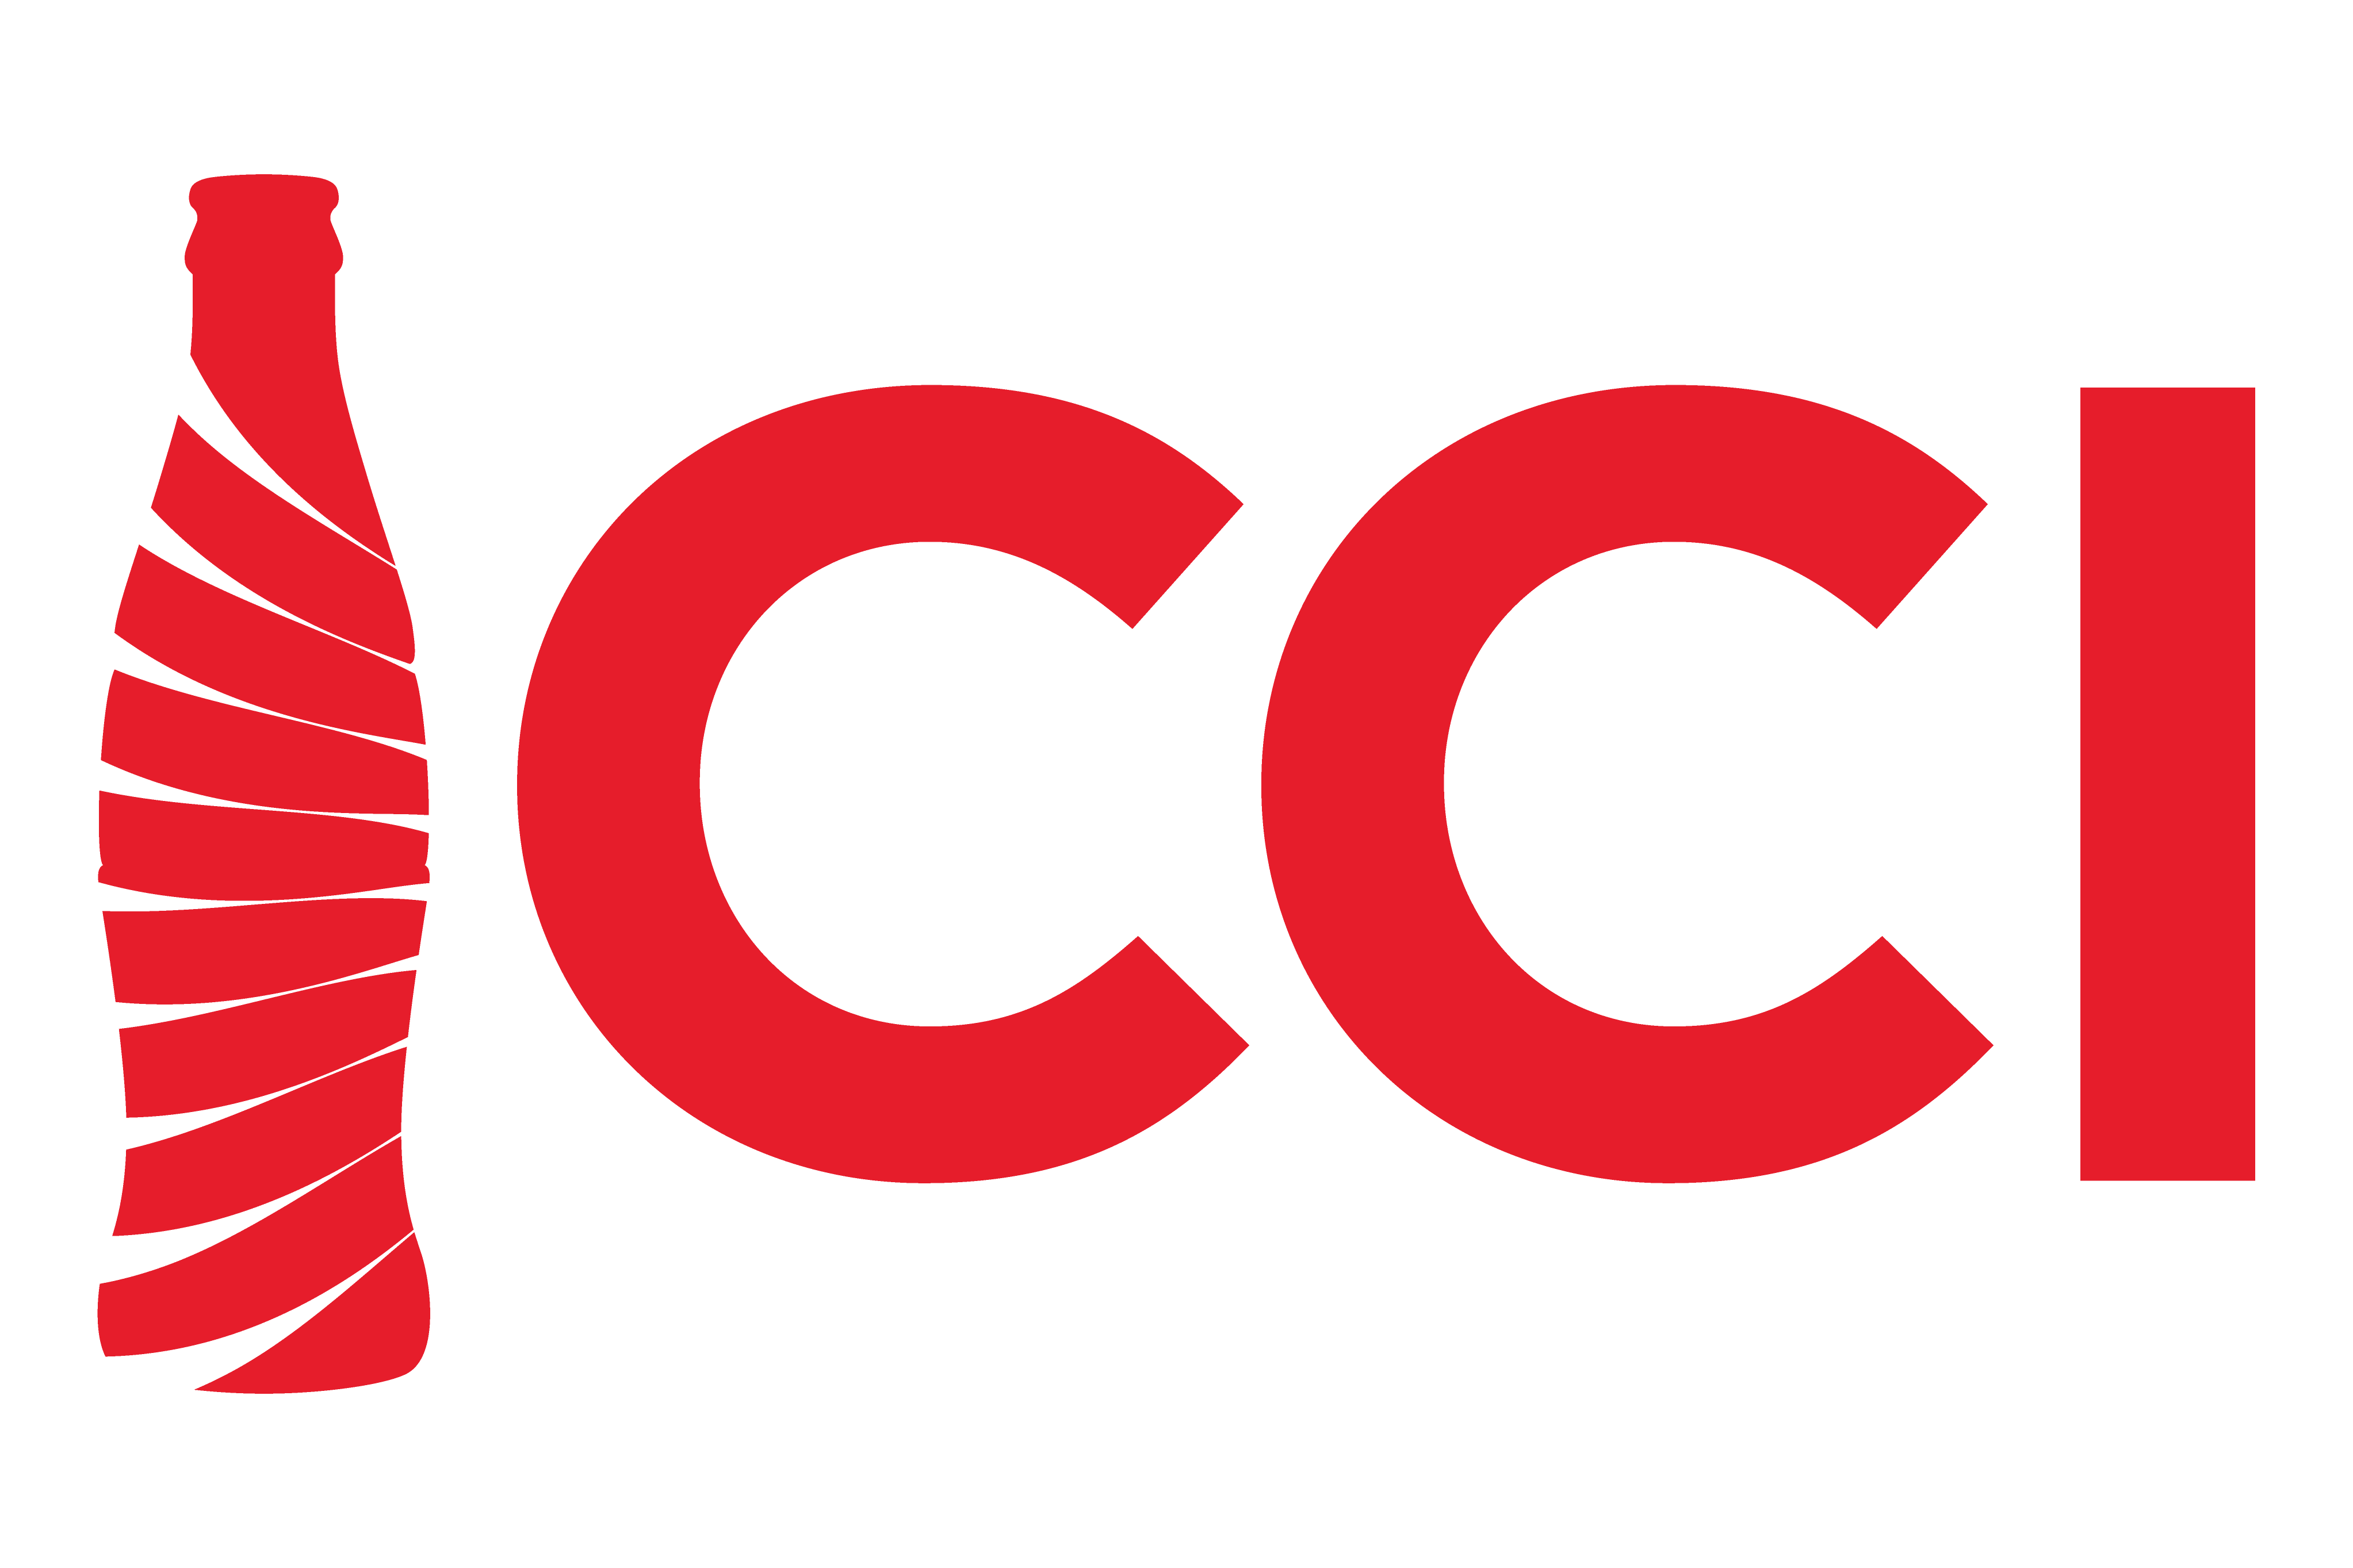 CCI